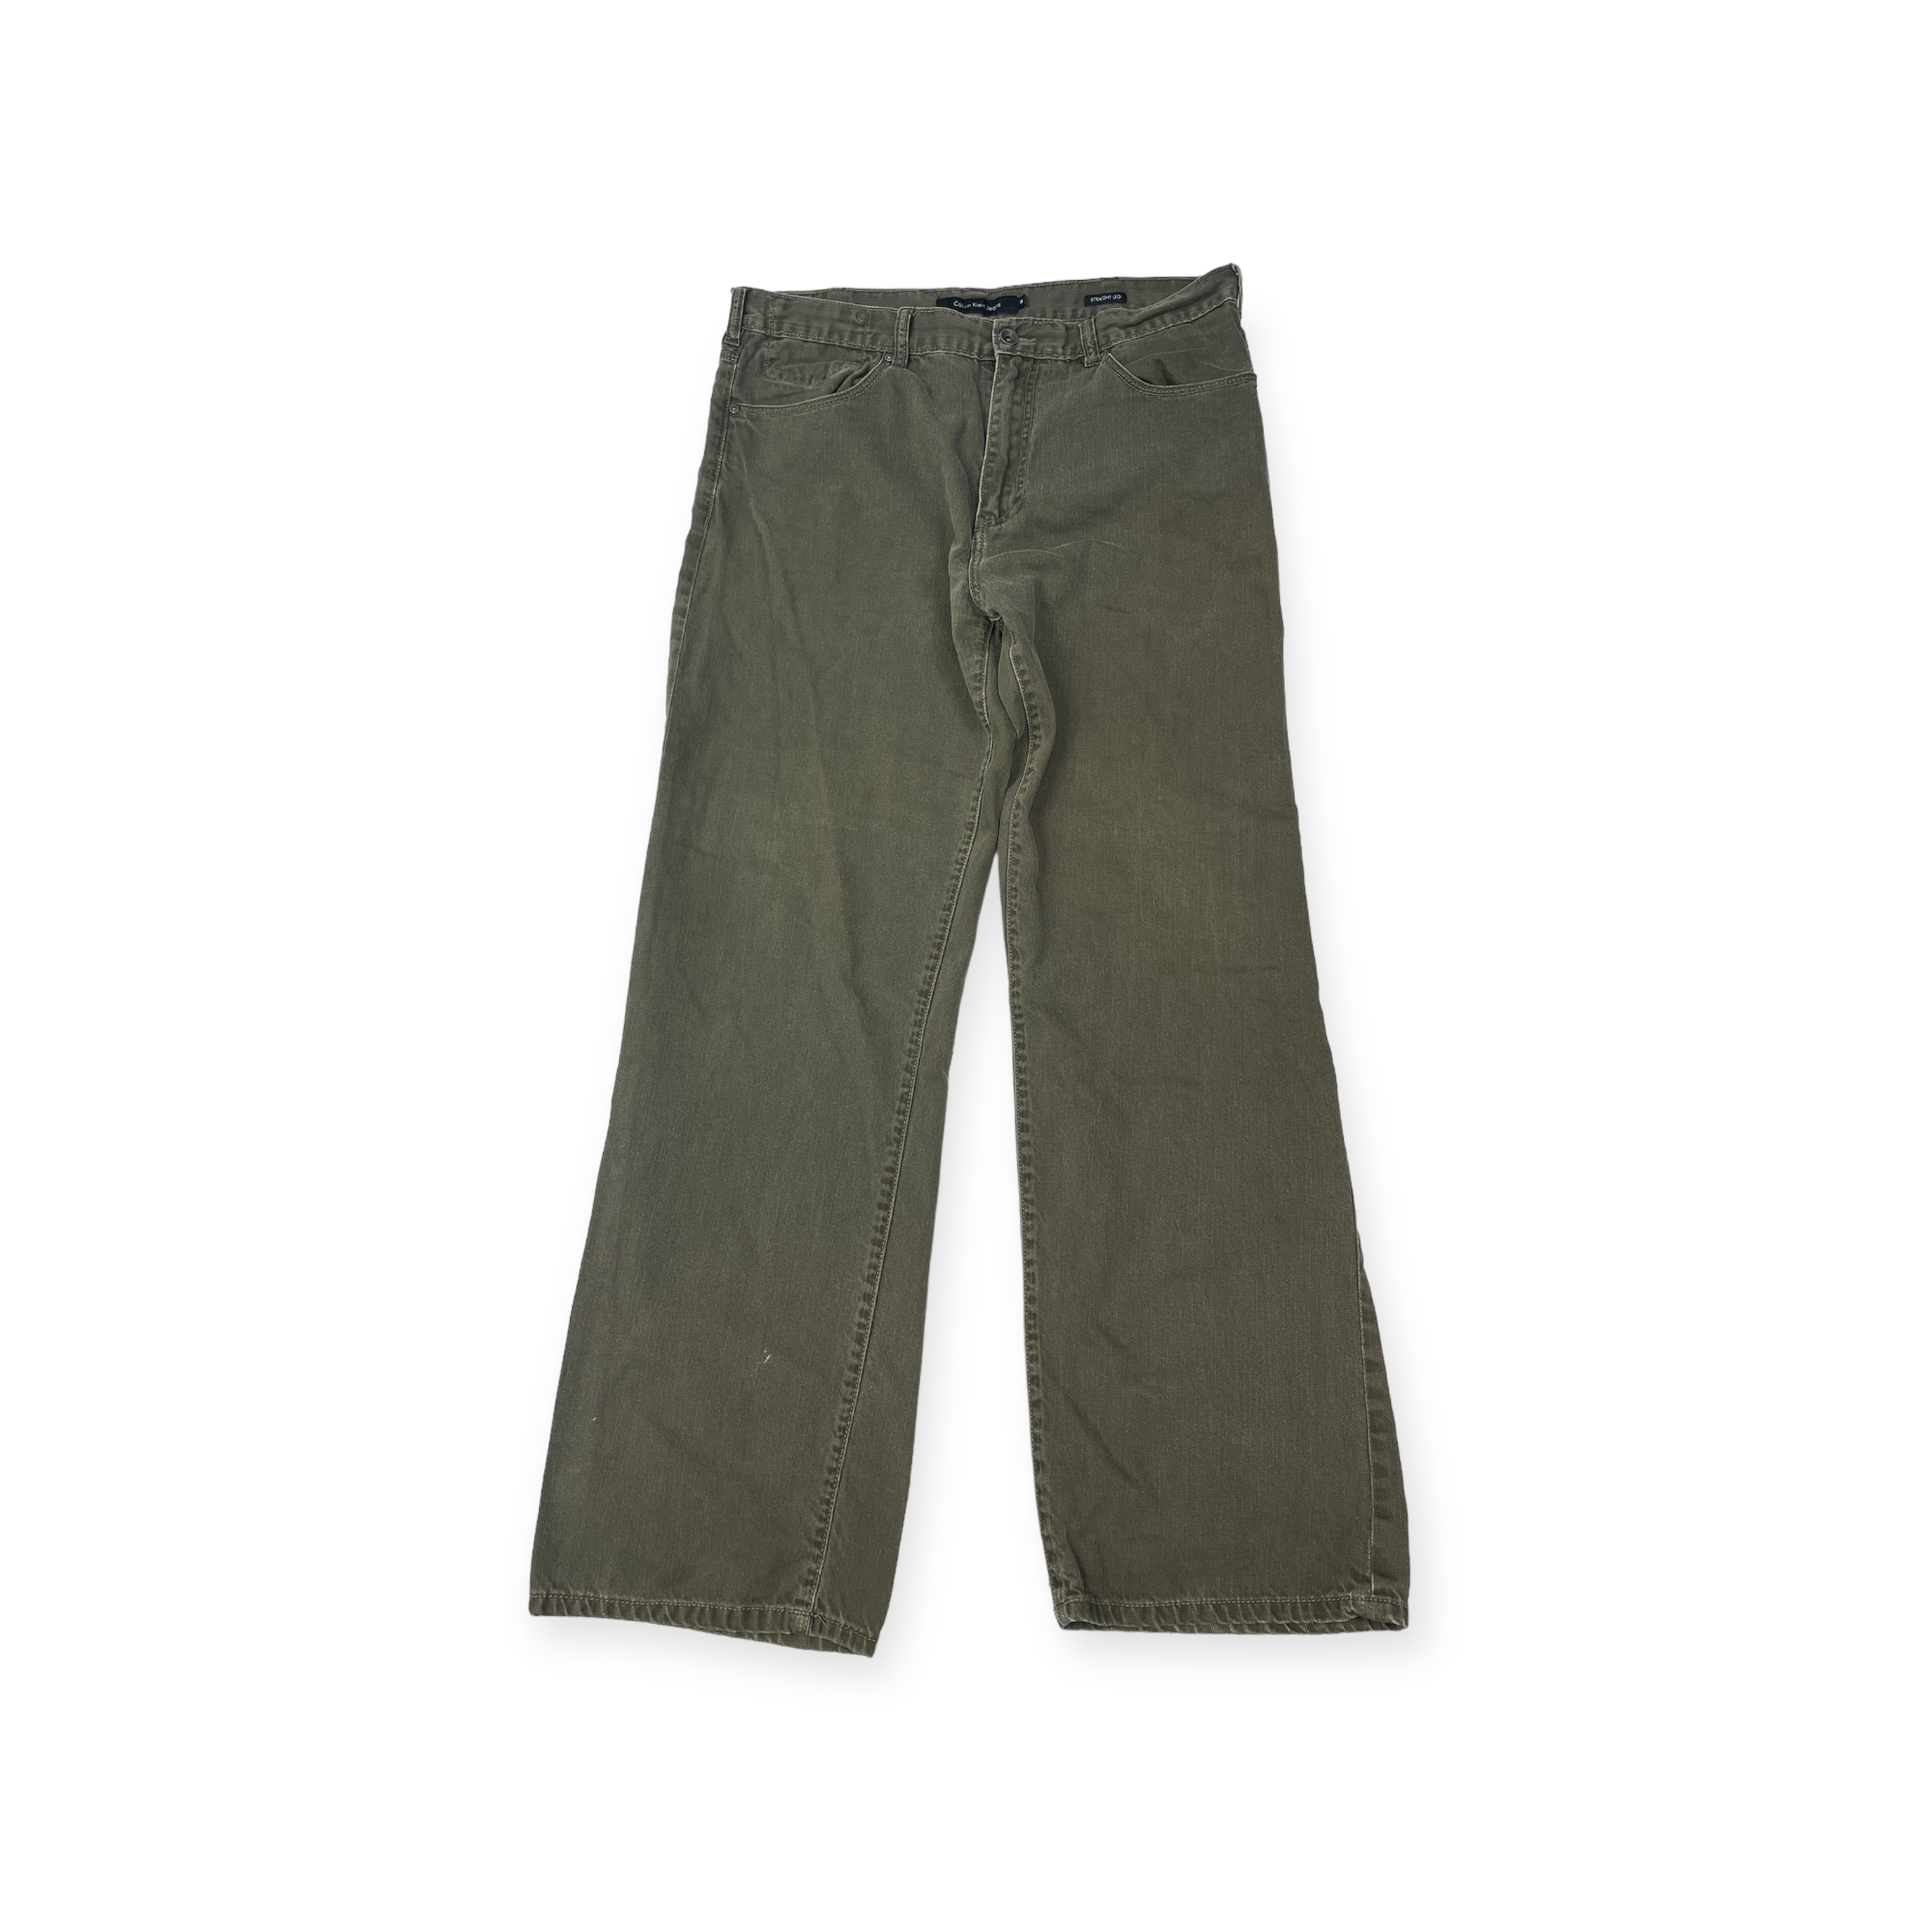 Spodnie męskie jeansowe Calvin klein Jeans 36/32